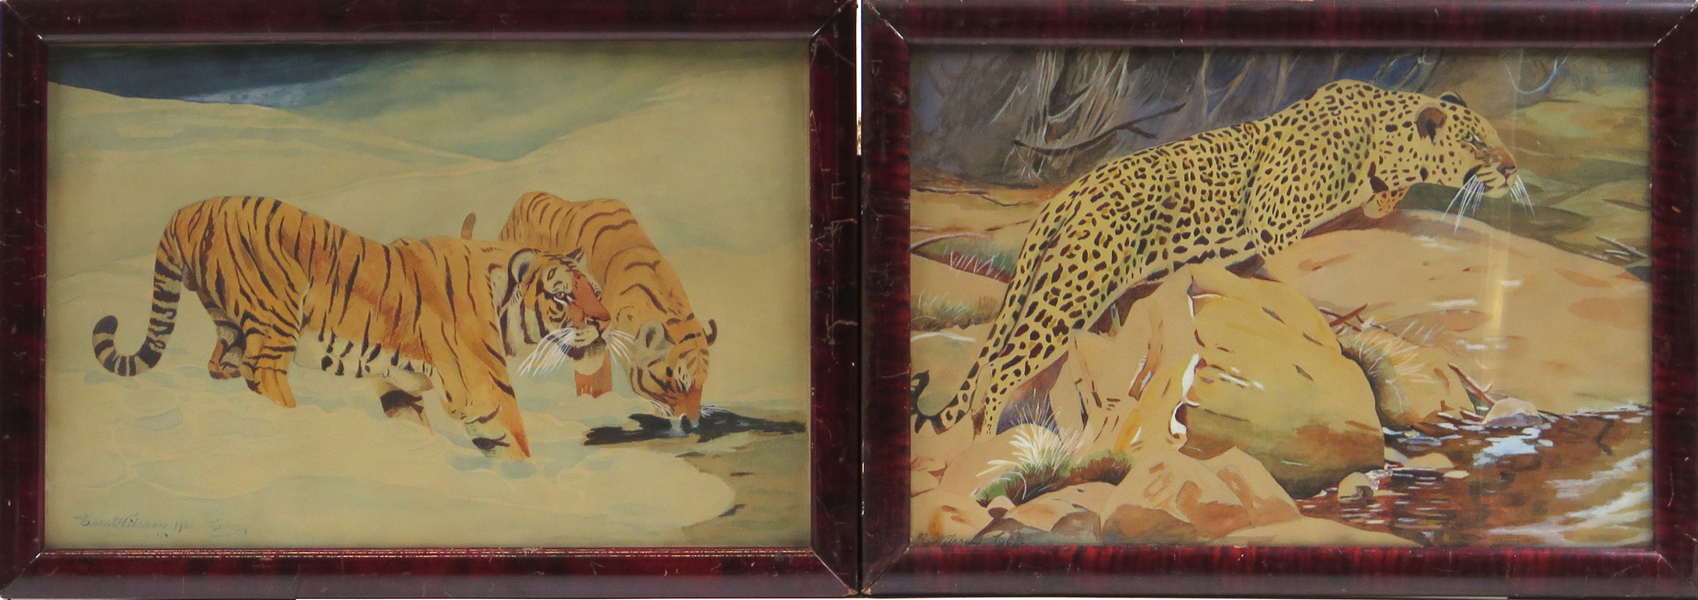 Kuhnert, Wilhelm, kopia efter, akvareller, 1 par, "Manchurisk tiger" respektive "Leopard", signerade Ernst Nilsson, synlig pappersstorlek 28 x 42 cm_26984a_lg.jpeg